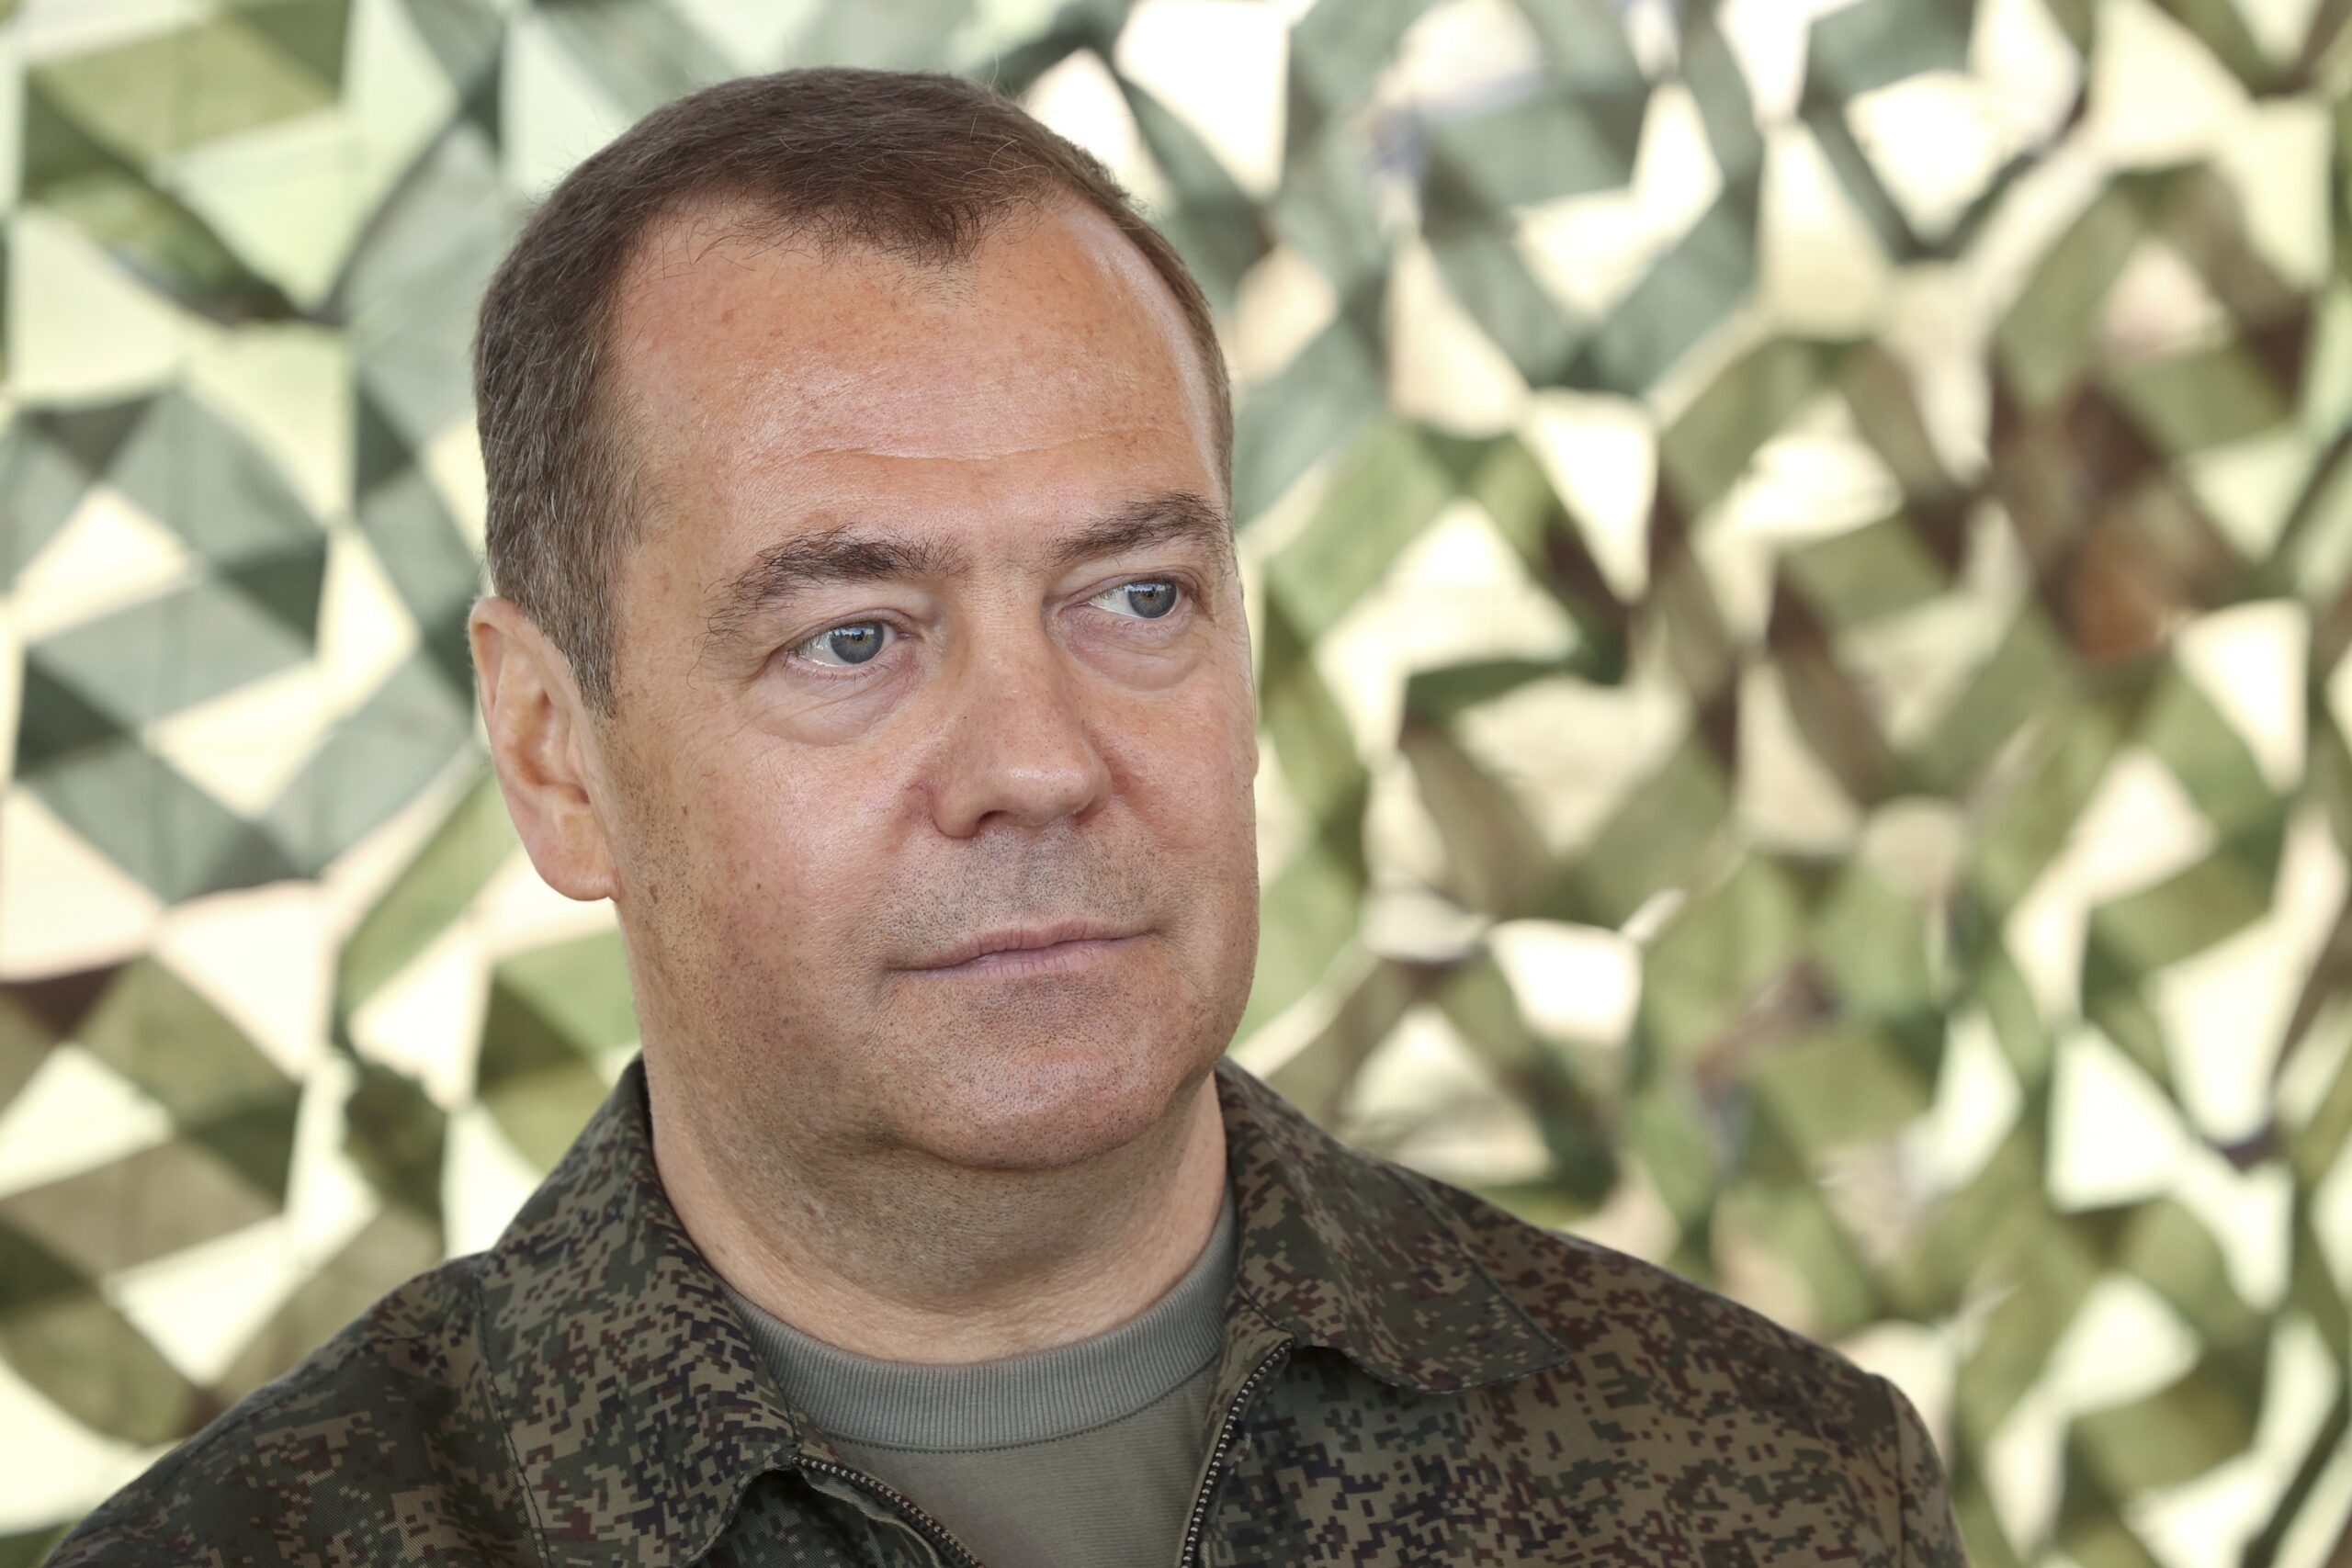 H Ρωσία στρατολόγησε από τον Ιανουάριο 231.000 στρατιώτες, λέει ο Μεντβέντεφ